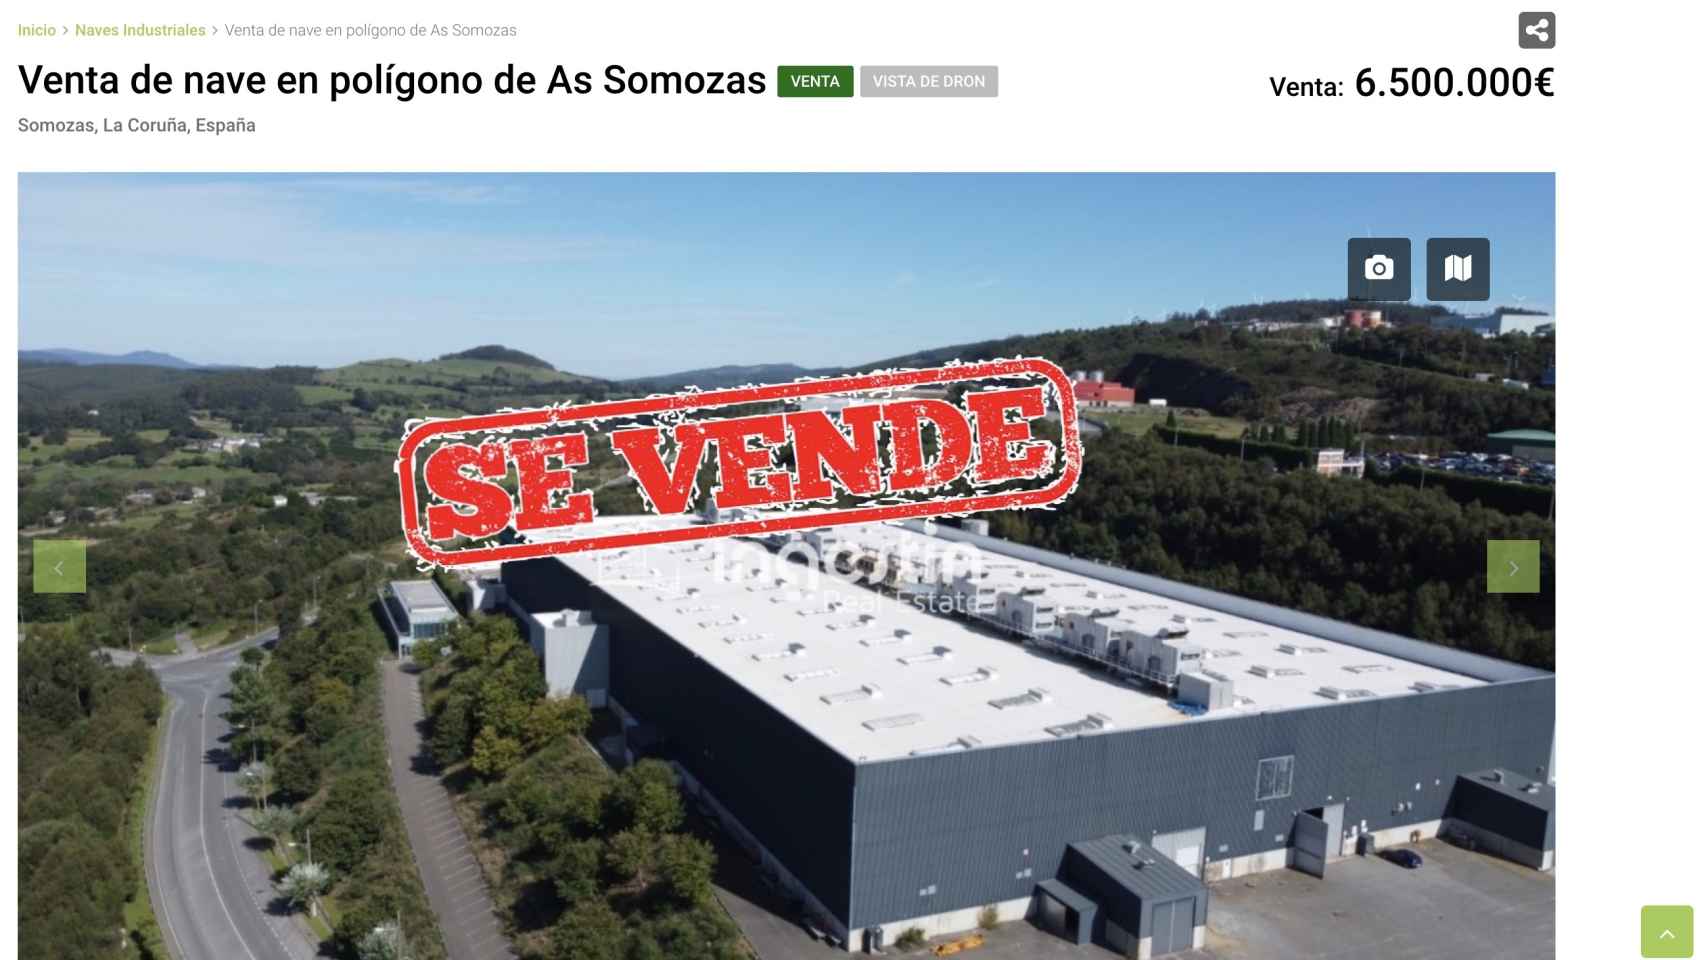 La planta de Siemens Gamesa de La Coruña, ya cerrada, en un portal inmobiliario en contra de un plan industrial.